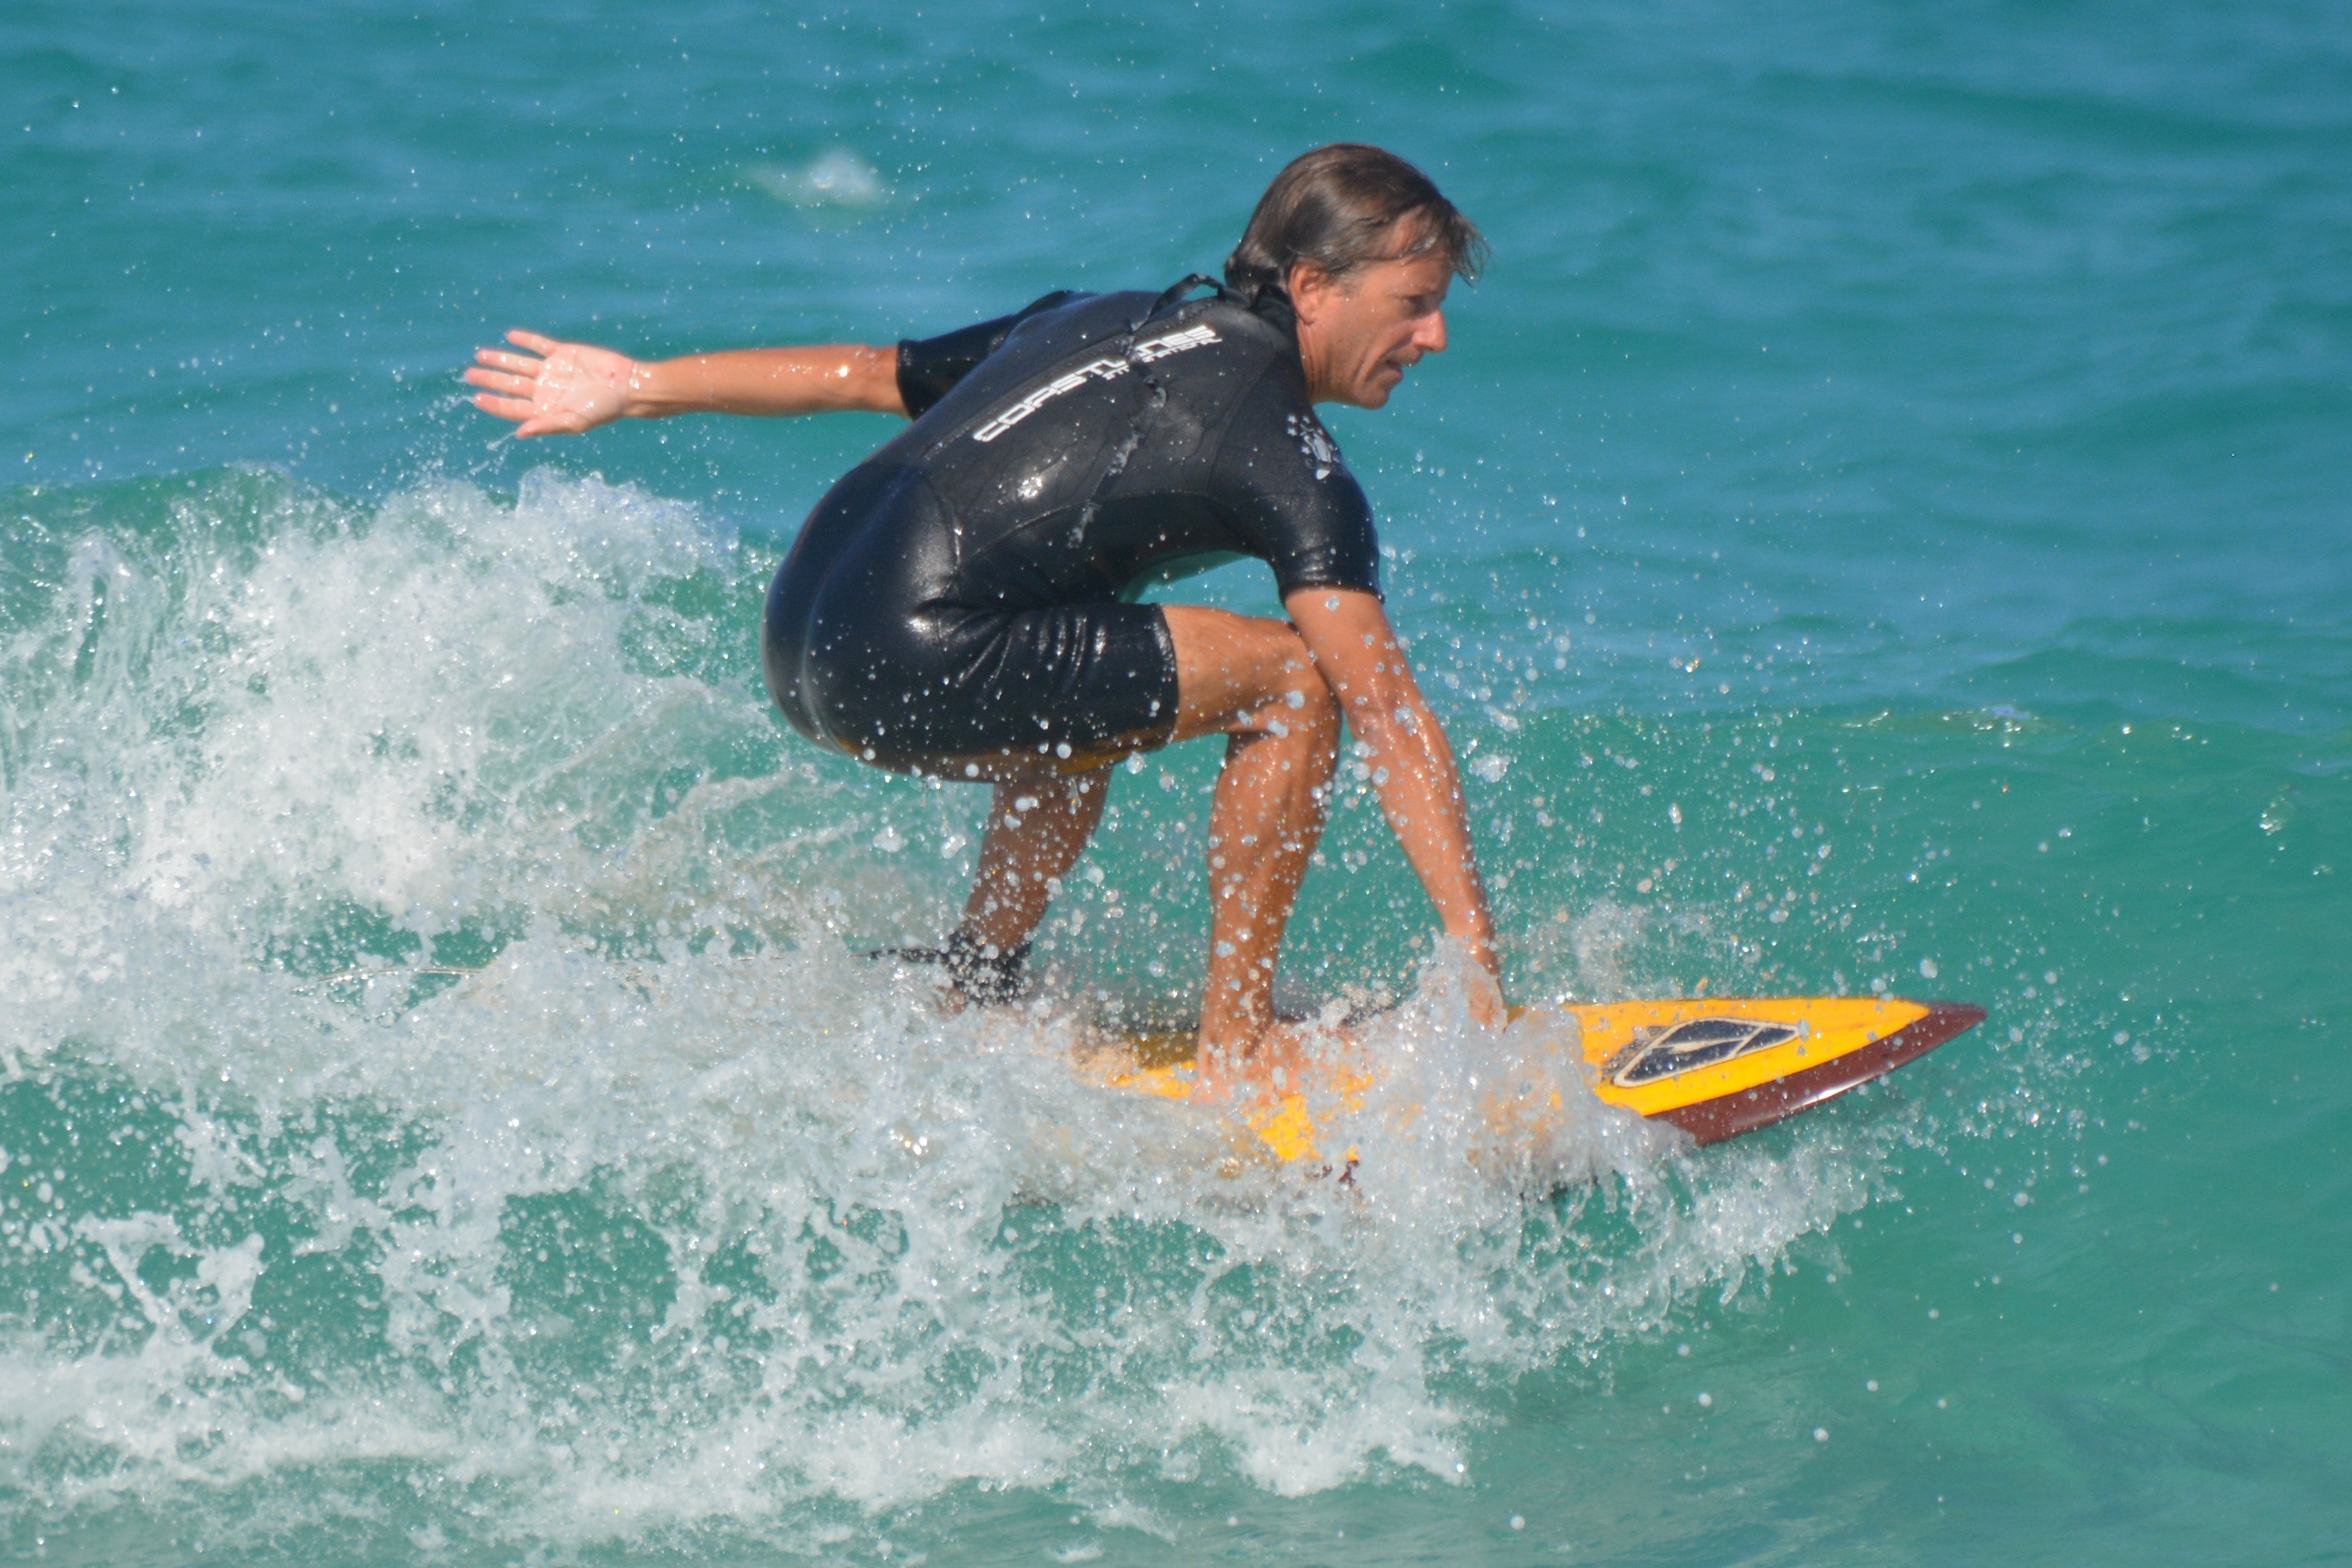 Surfboard, Sea, Man, People, Ocean, sport, motion